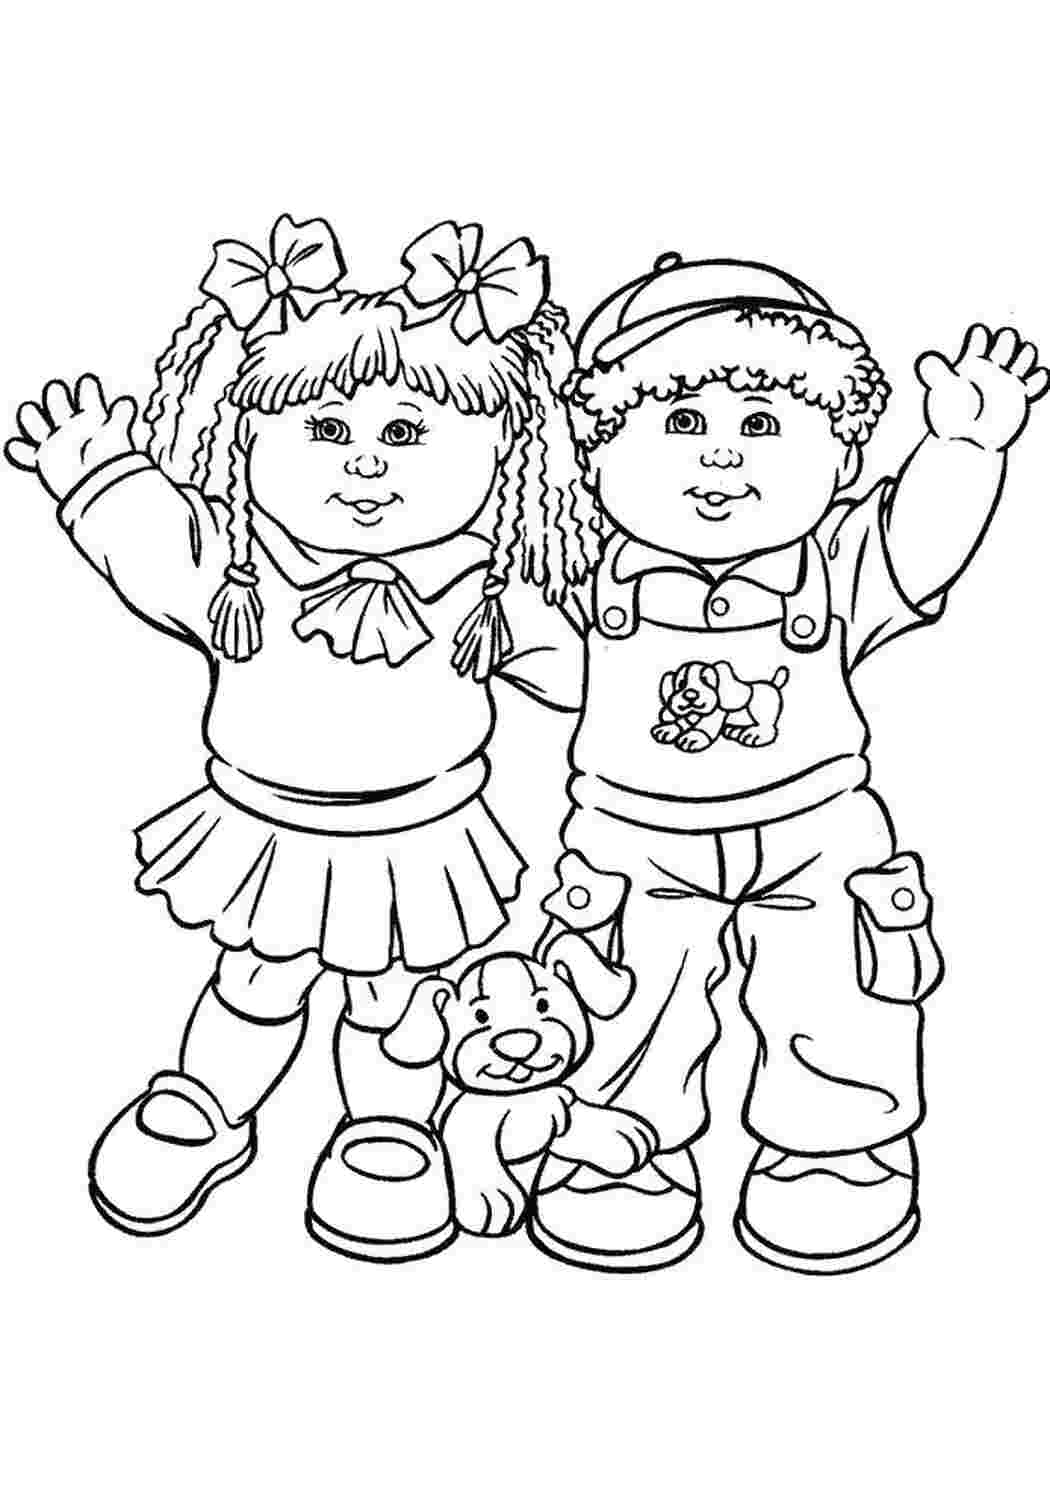 Рисунок дружбы для детей раскраска